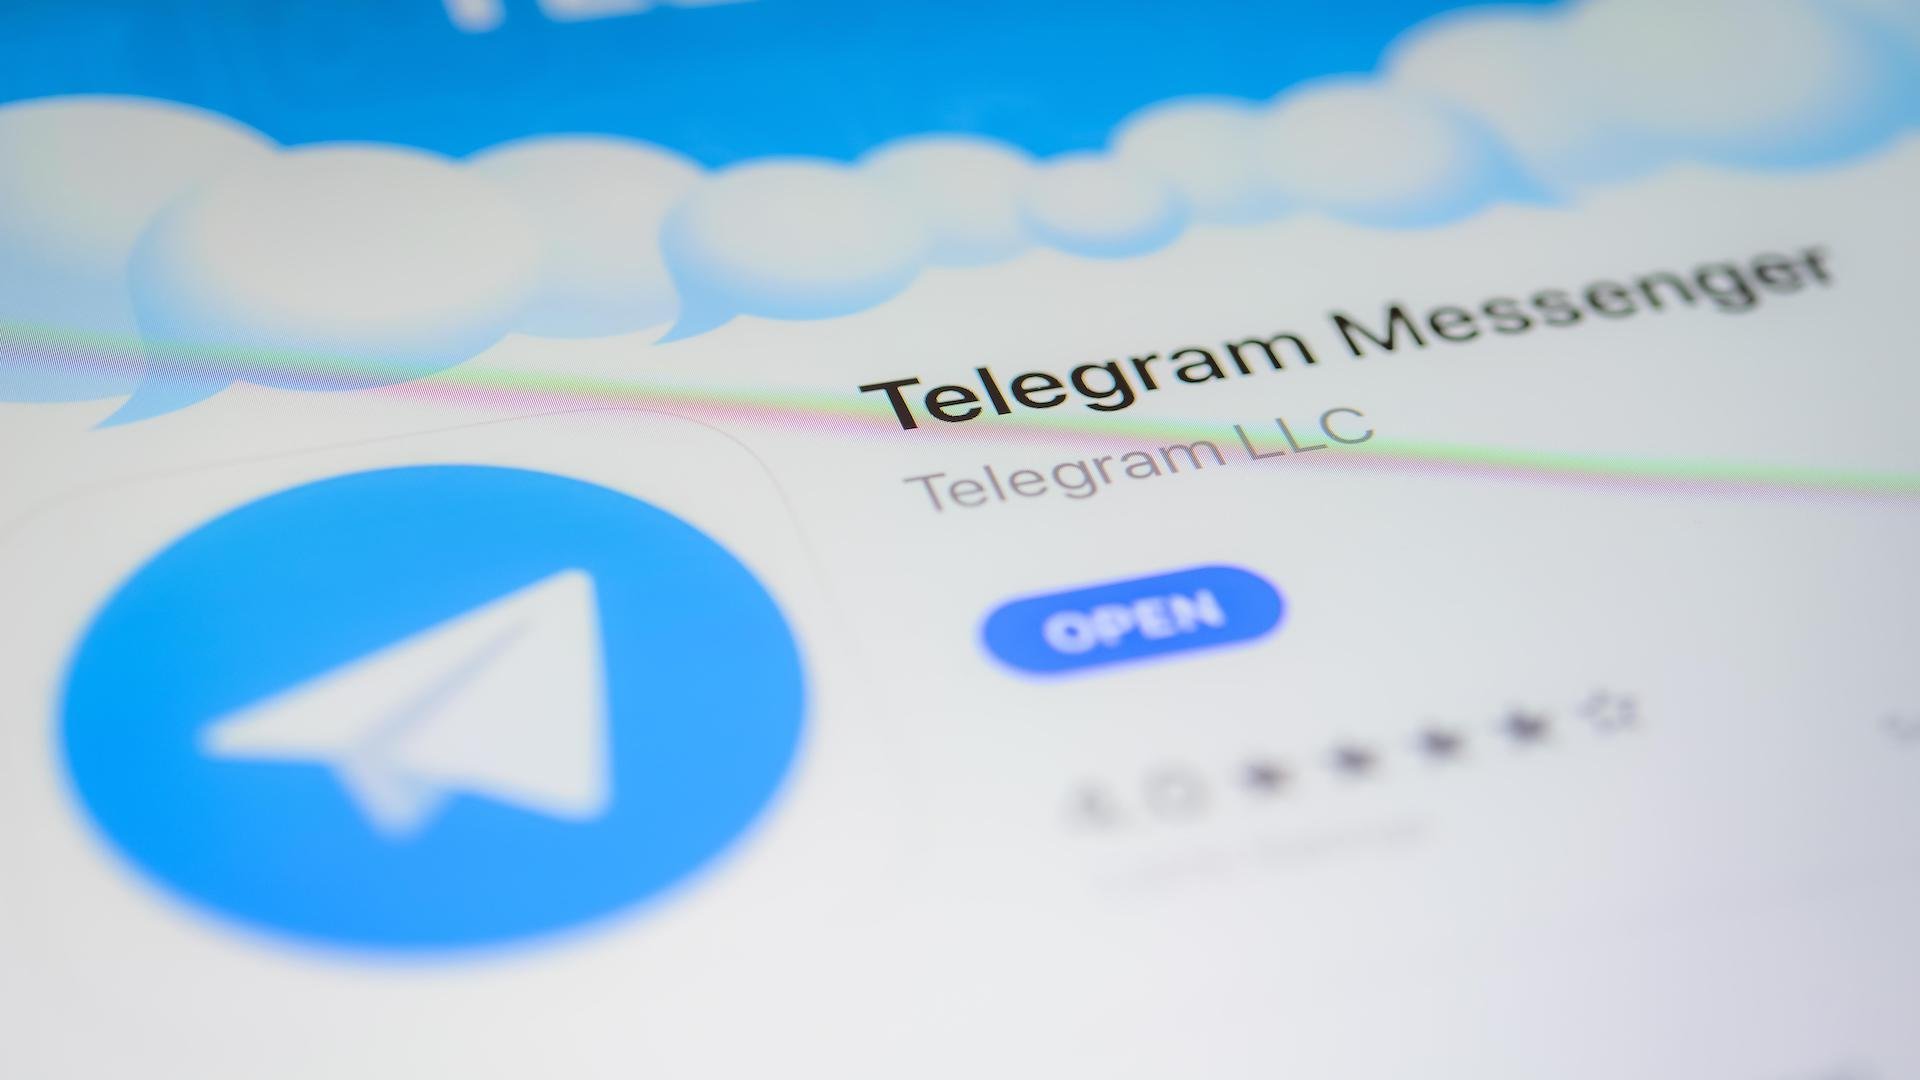 Как обновить телеграмм до последней версии андроид бесплатно на русском языке фото 61